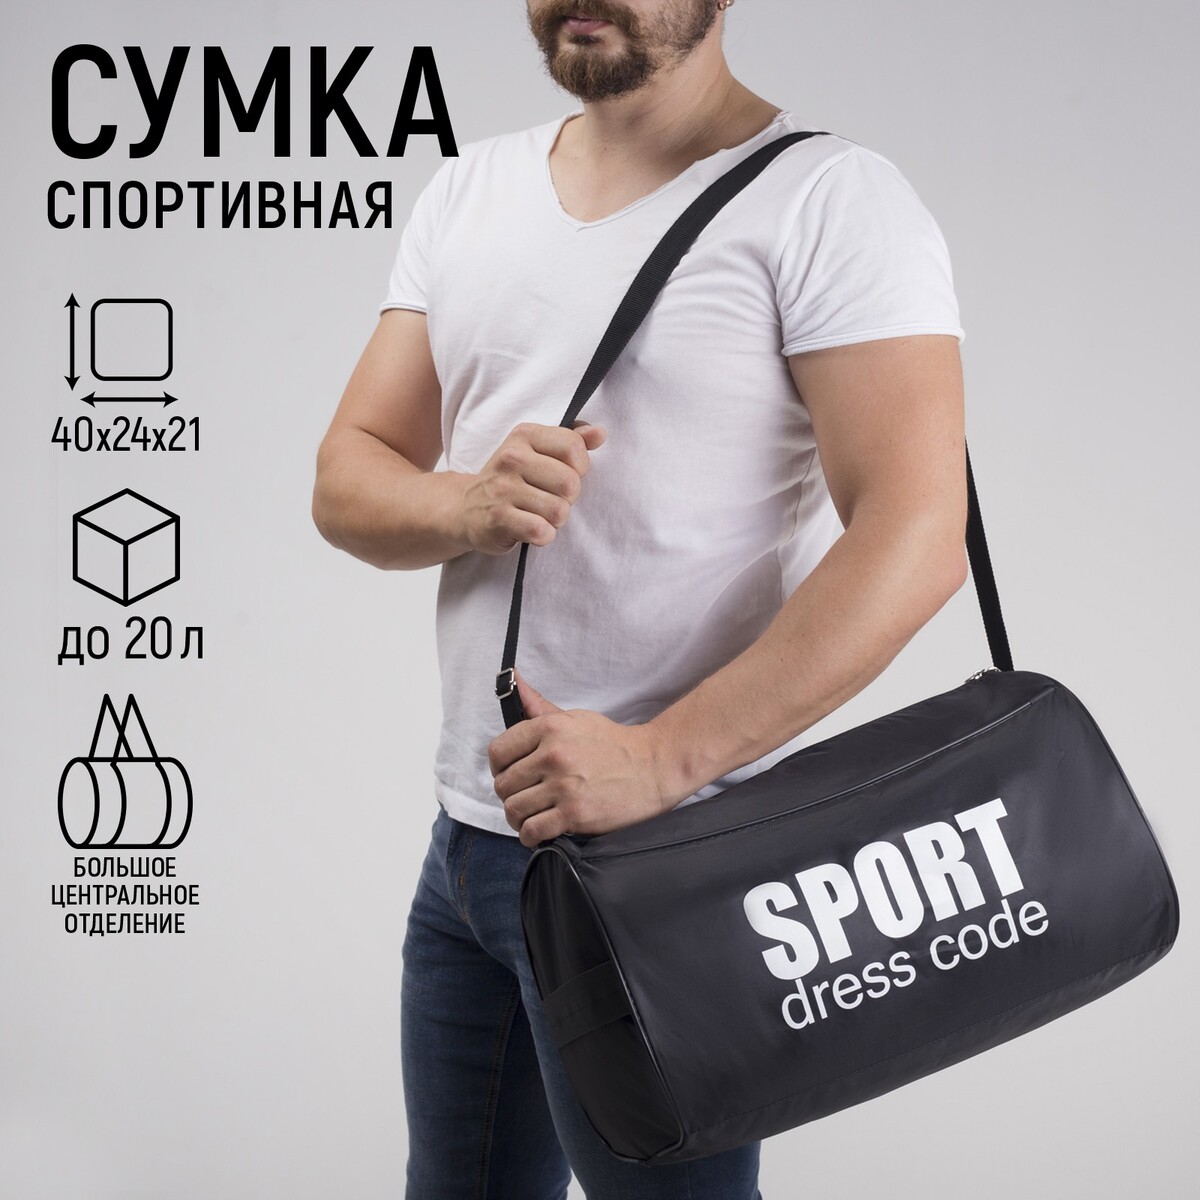 Сумка спортивная sport- dress code на молнии, наружный карман, цвет черный сумка спортивная футбол 40х21х24 см